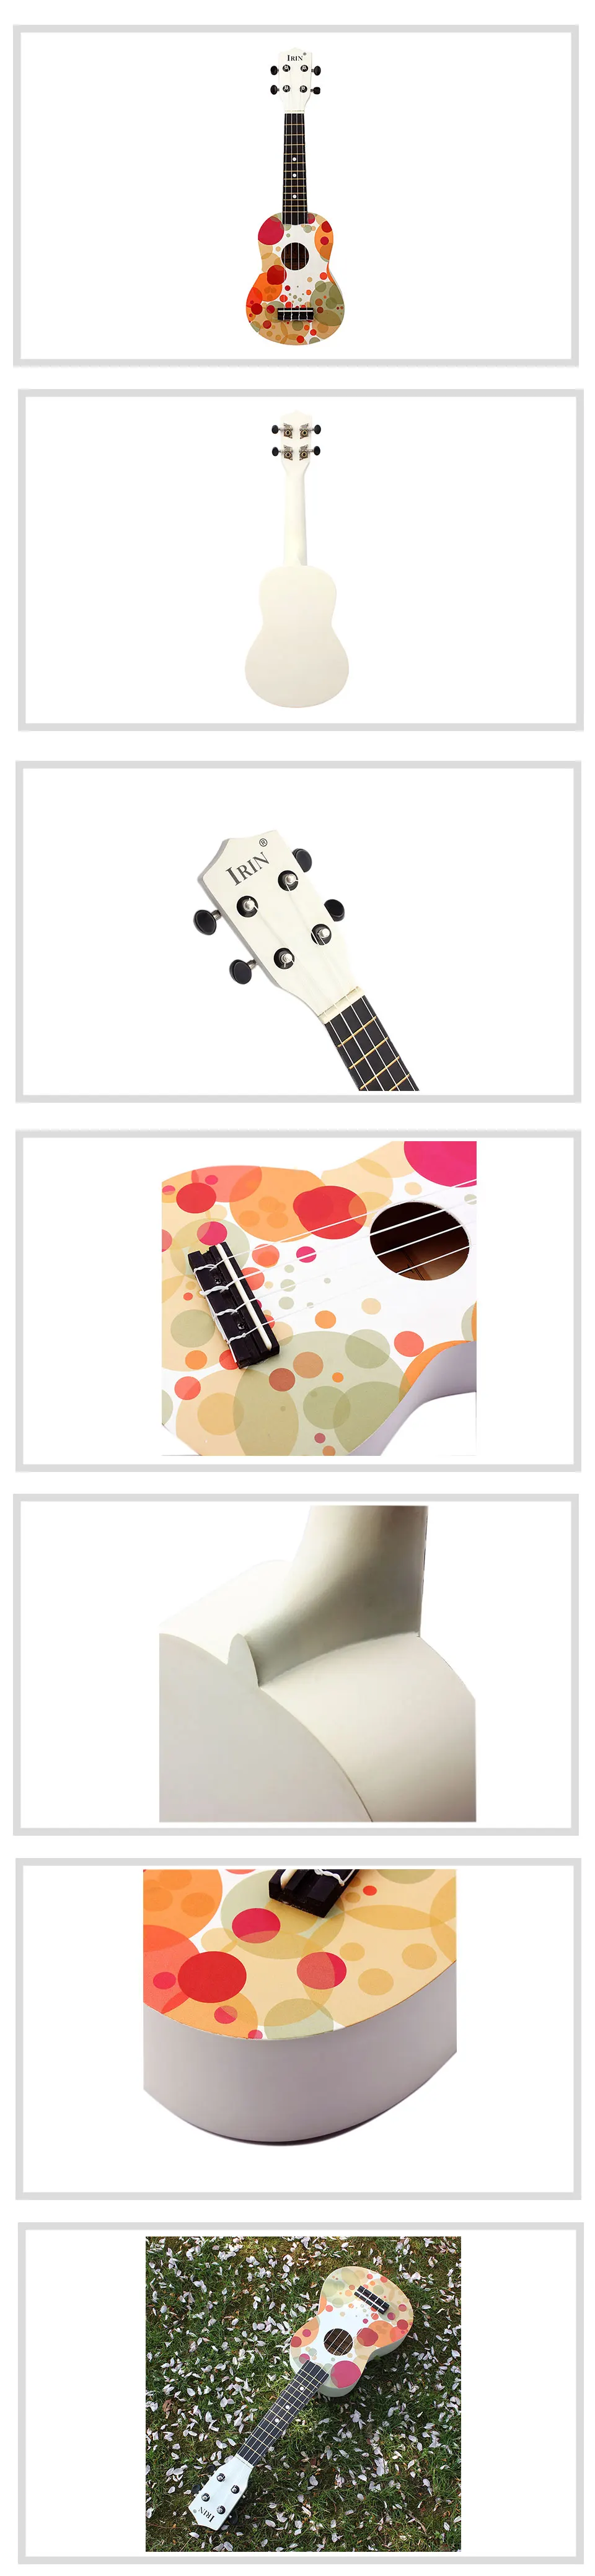 Горячая Распродажа Гавайские гитары сопрано 4 струны музыкальная Акустическая гитара 21 дюймов деревянная Гавайская гитара 5 стилей Гавайские гитары укулеле кавакинхо